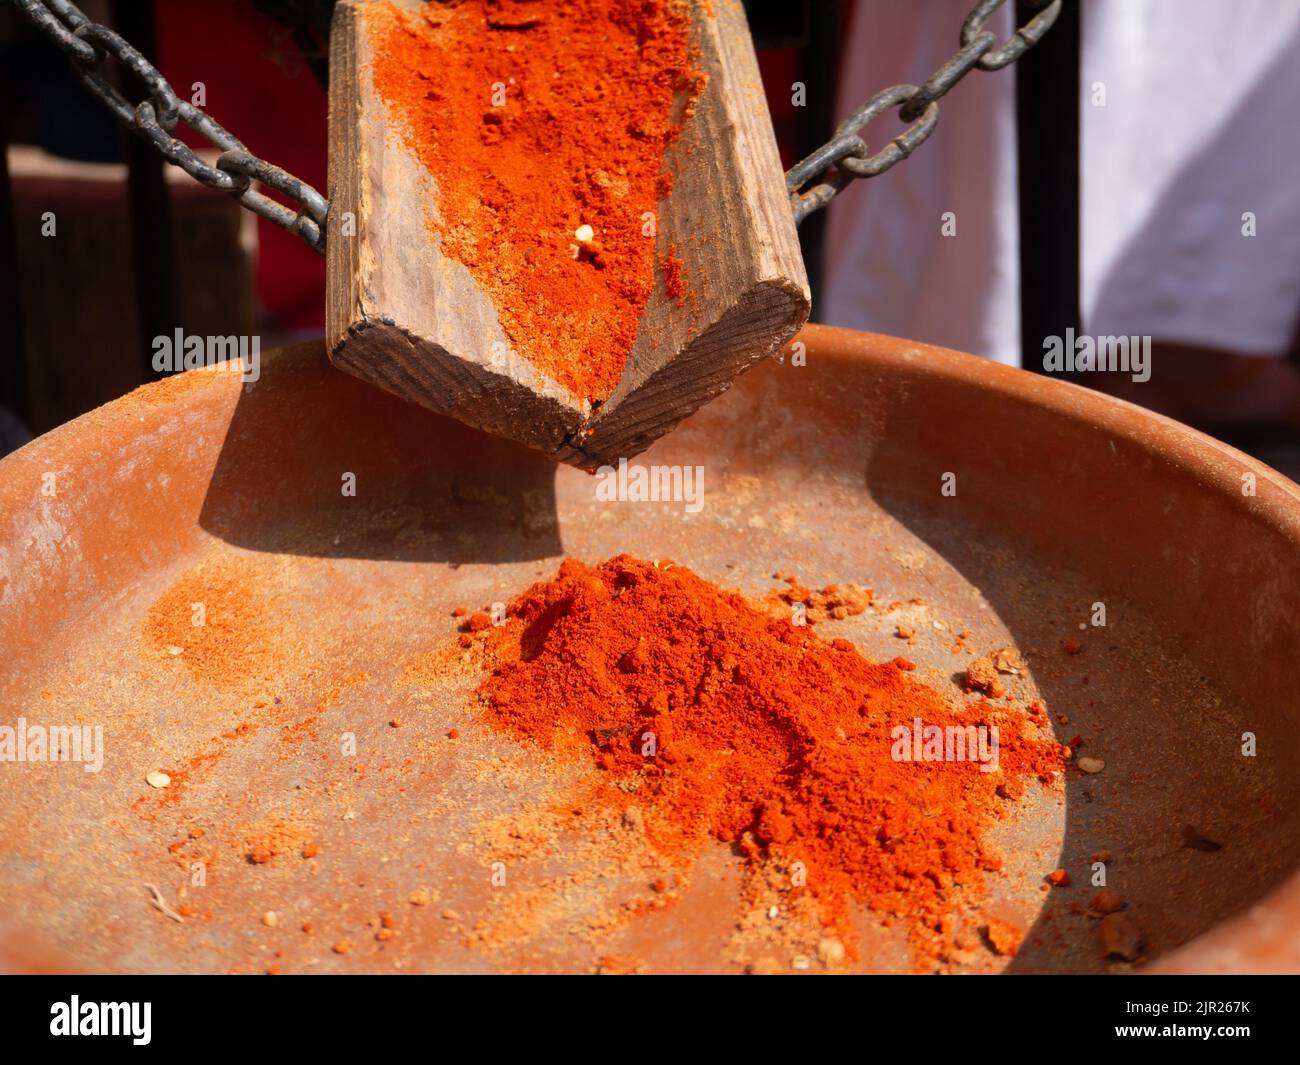 Spezie paprika a base di peperoni rossi secchi, affumicati e macinati nel recipiente in ceramica presso il bancone del mercato Foto Stock